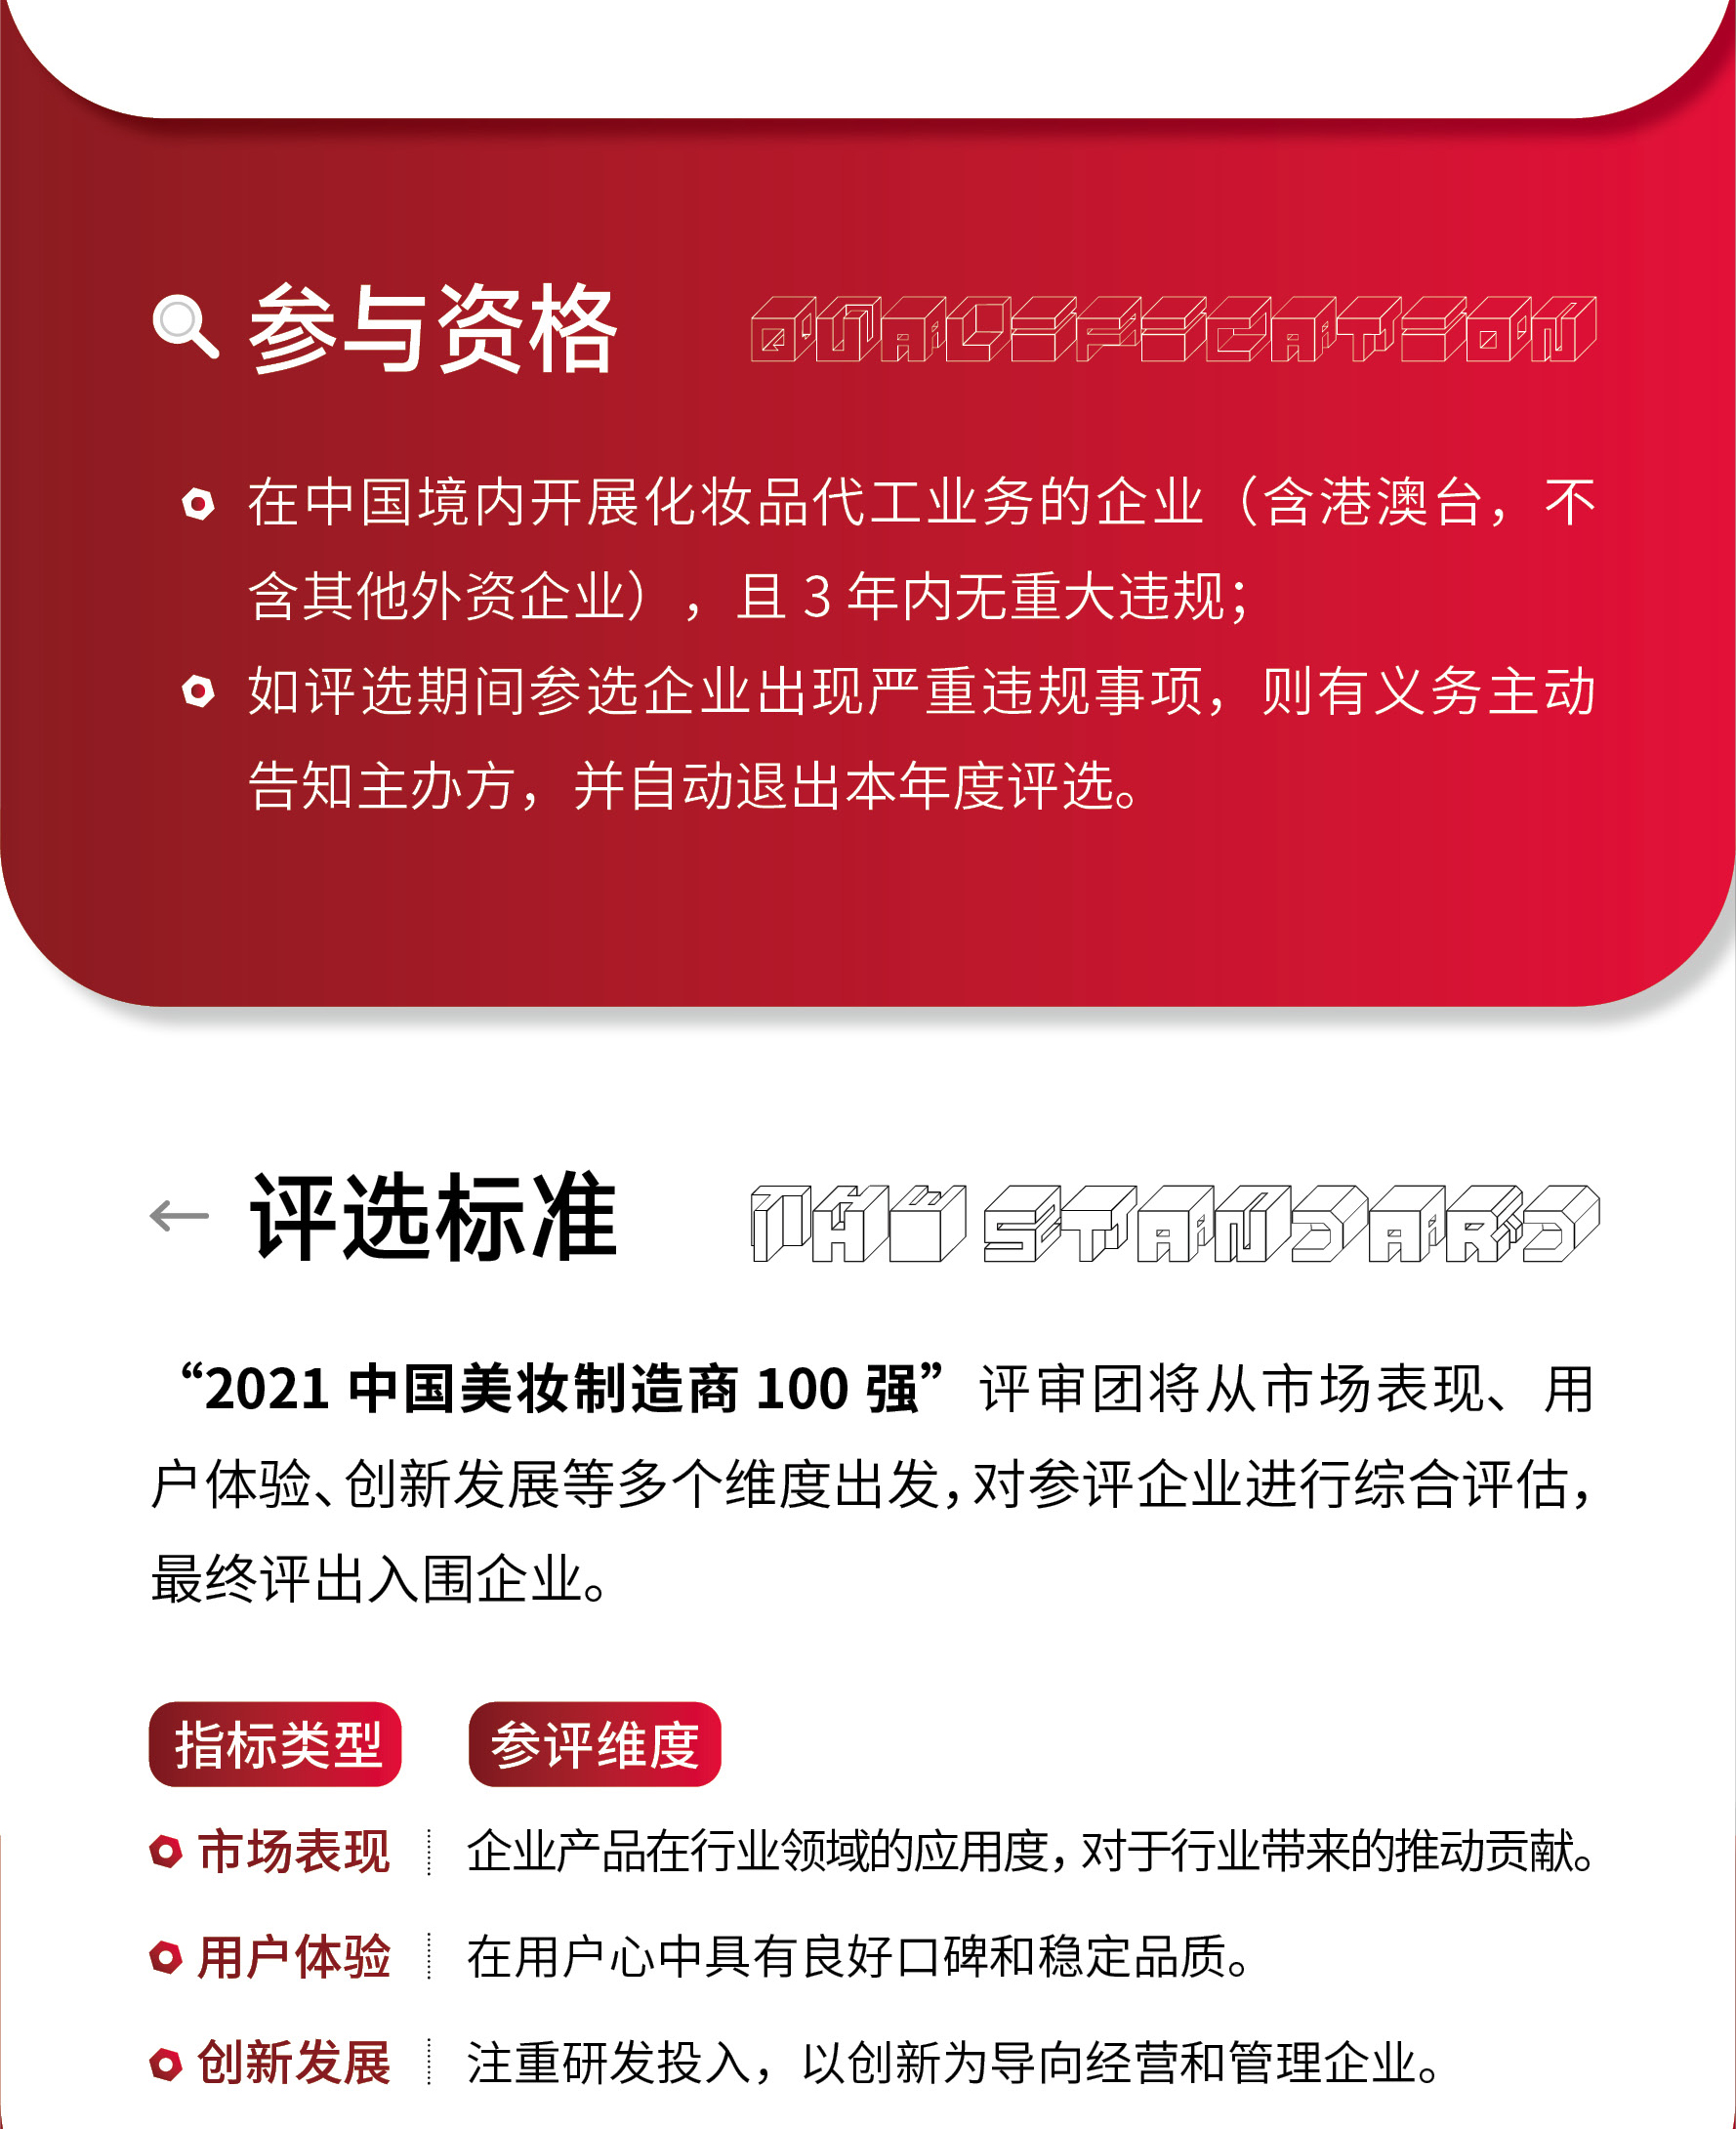 2021中国美妆百强制造企业评选活动长图h52_02.jpg